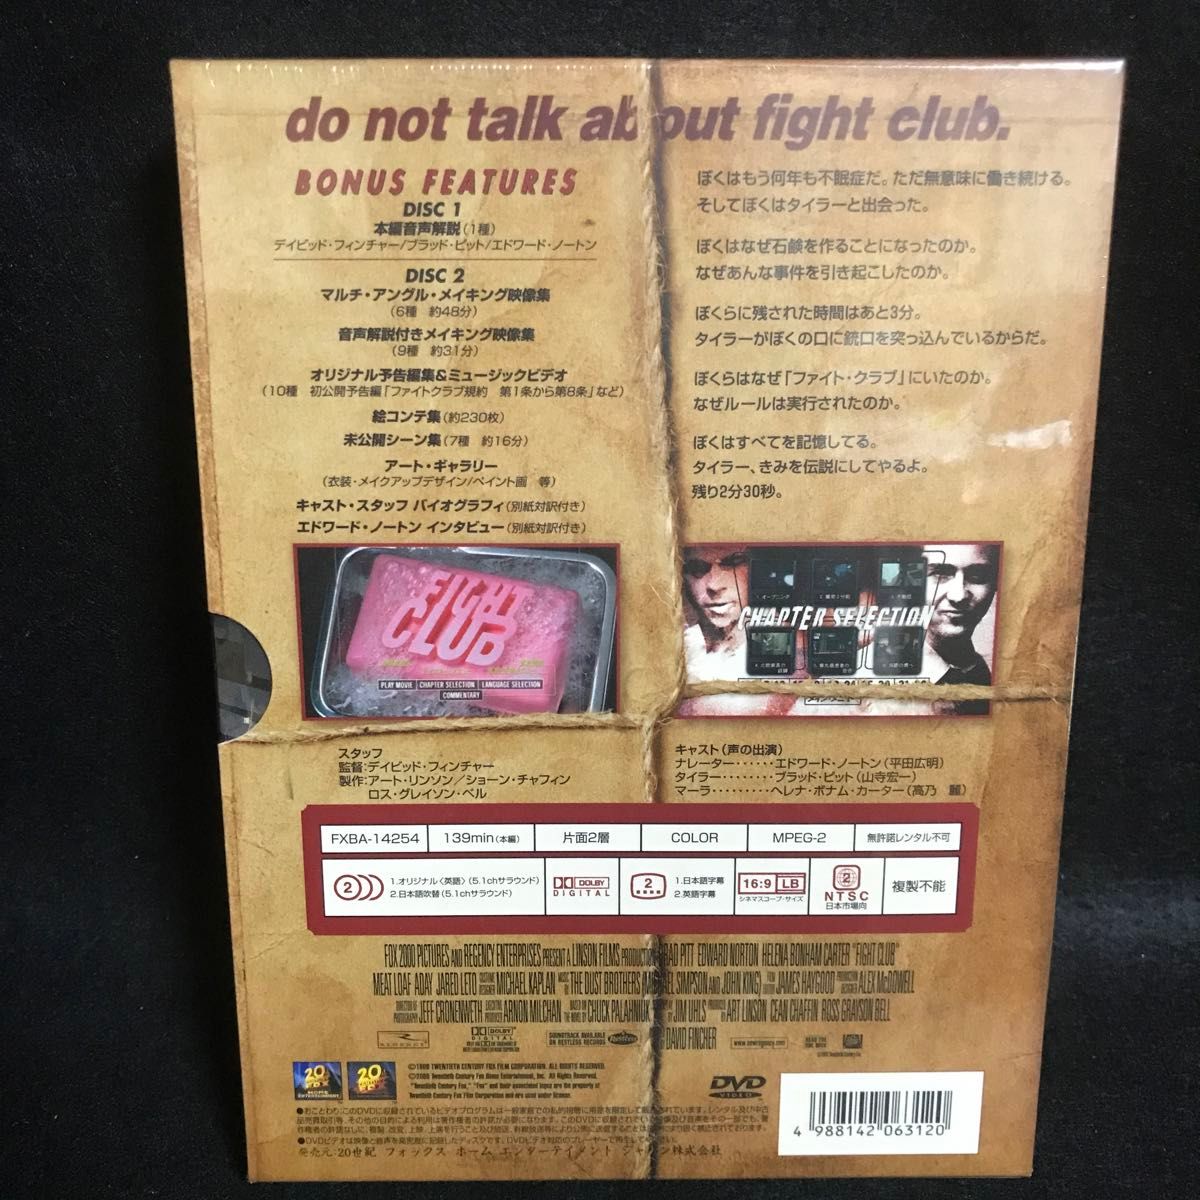 新品未開封 FIGHTCLUB プレミアムエディション 特別限定版 シュリンク付き DVD